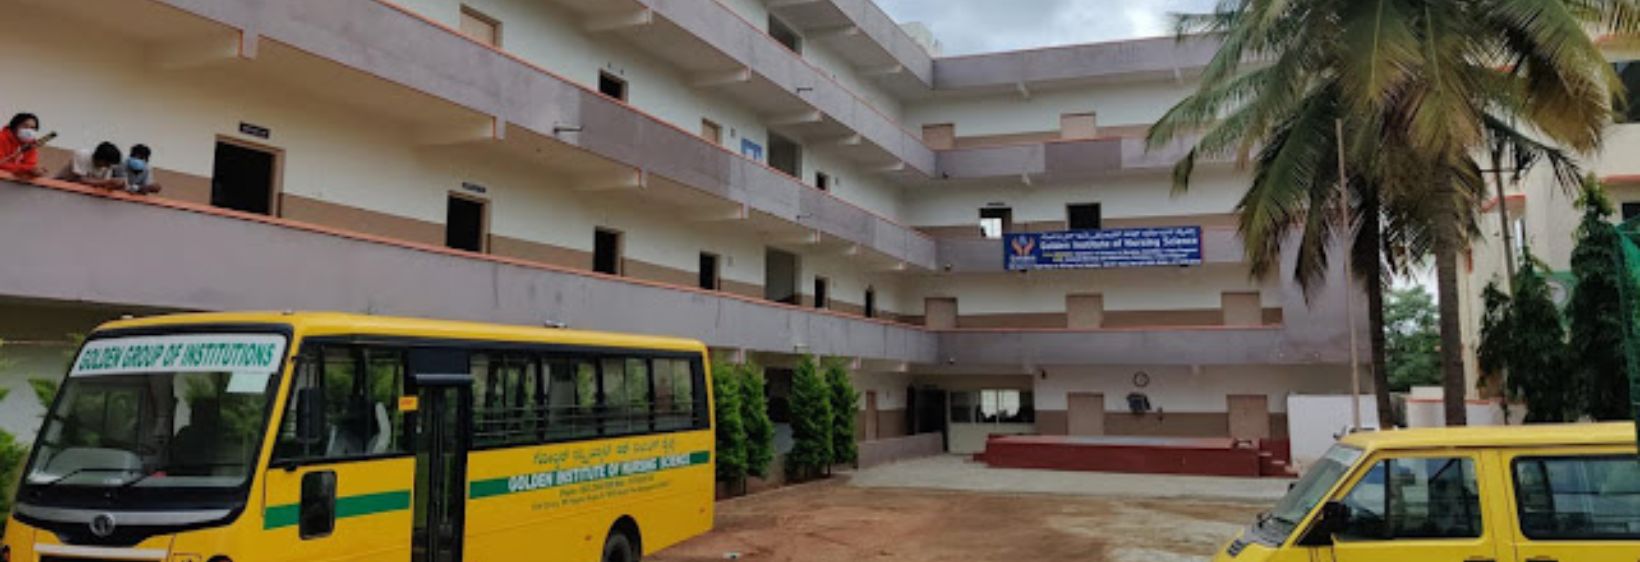 Golden Institute of Nursing Sciences - Bangalore